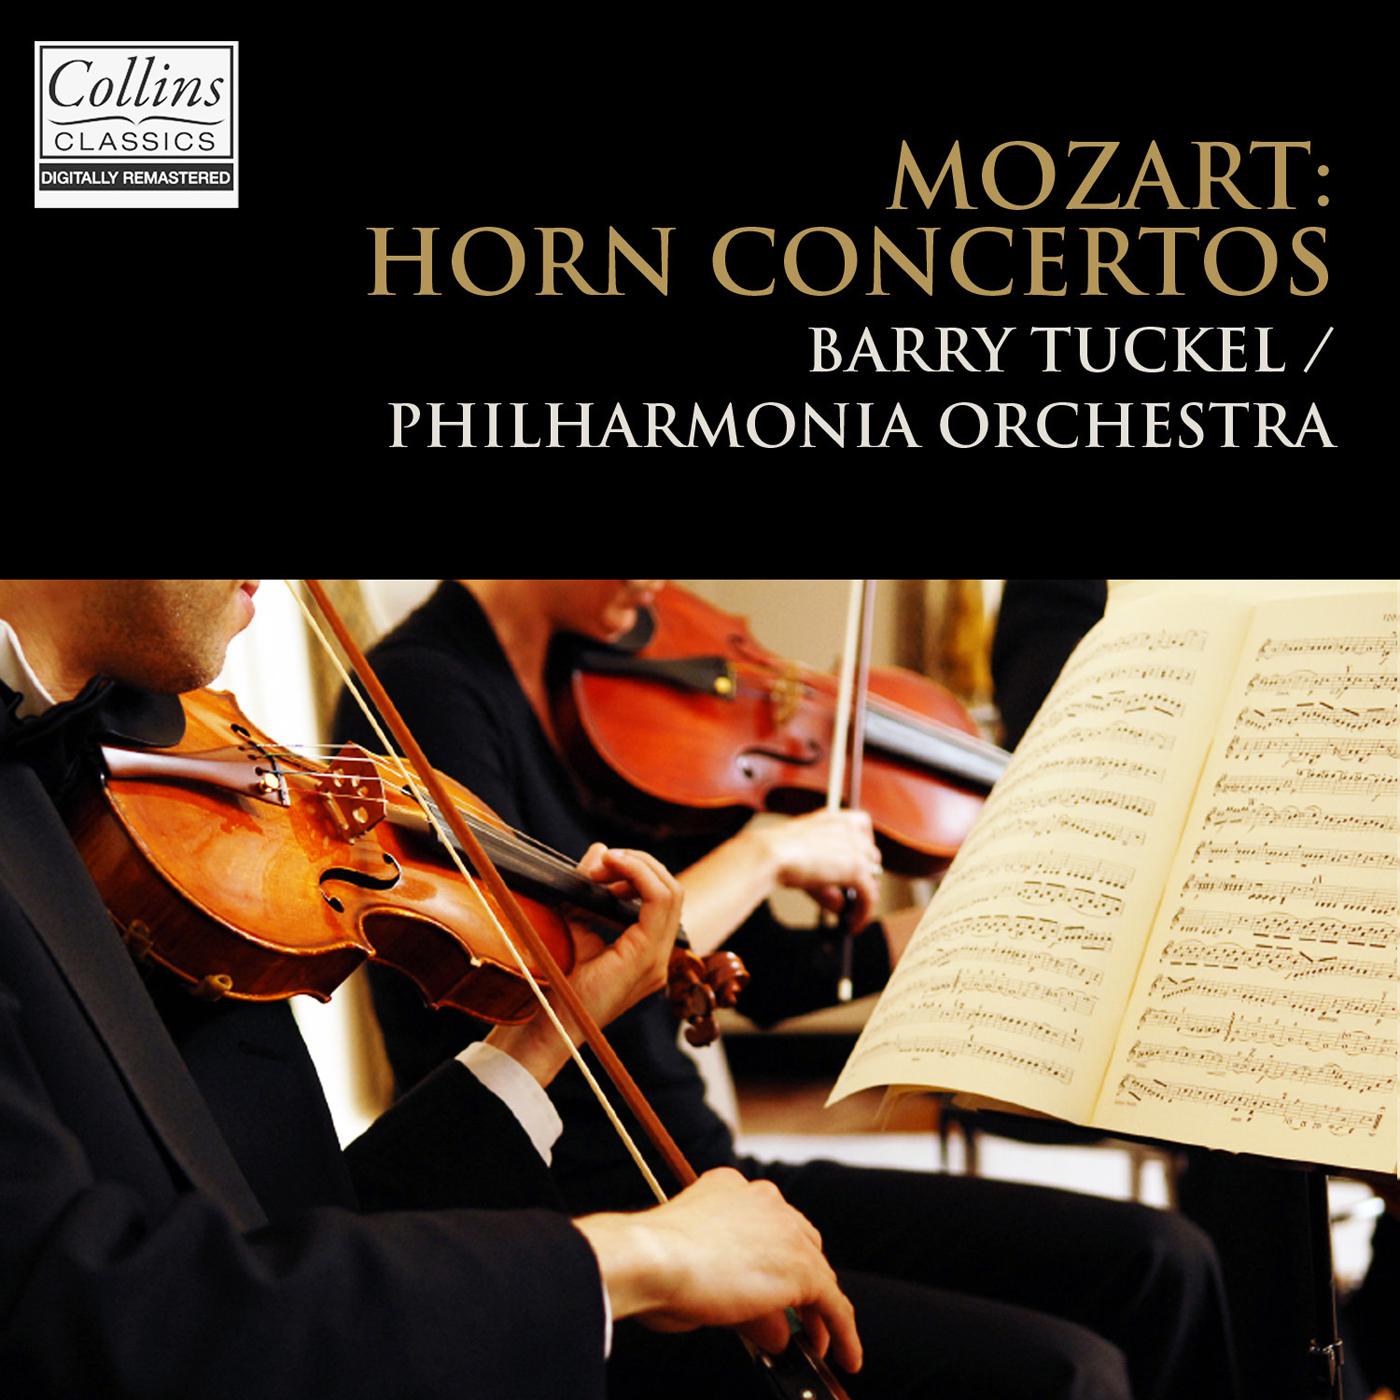 Horn Concerto No. 3 in E-Flat Major, K. 447: II. Romanze